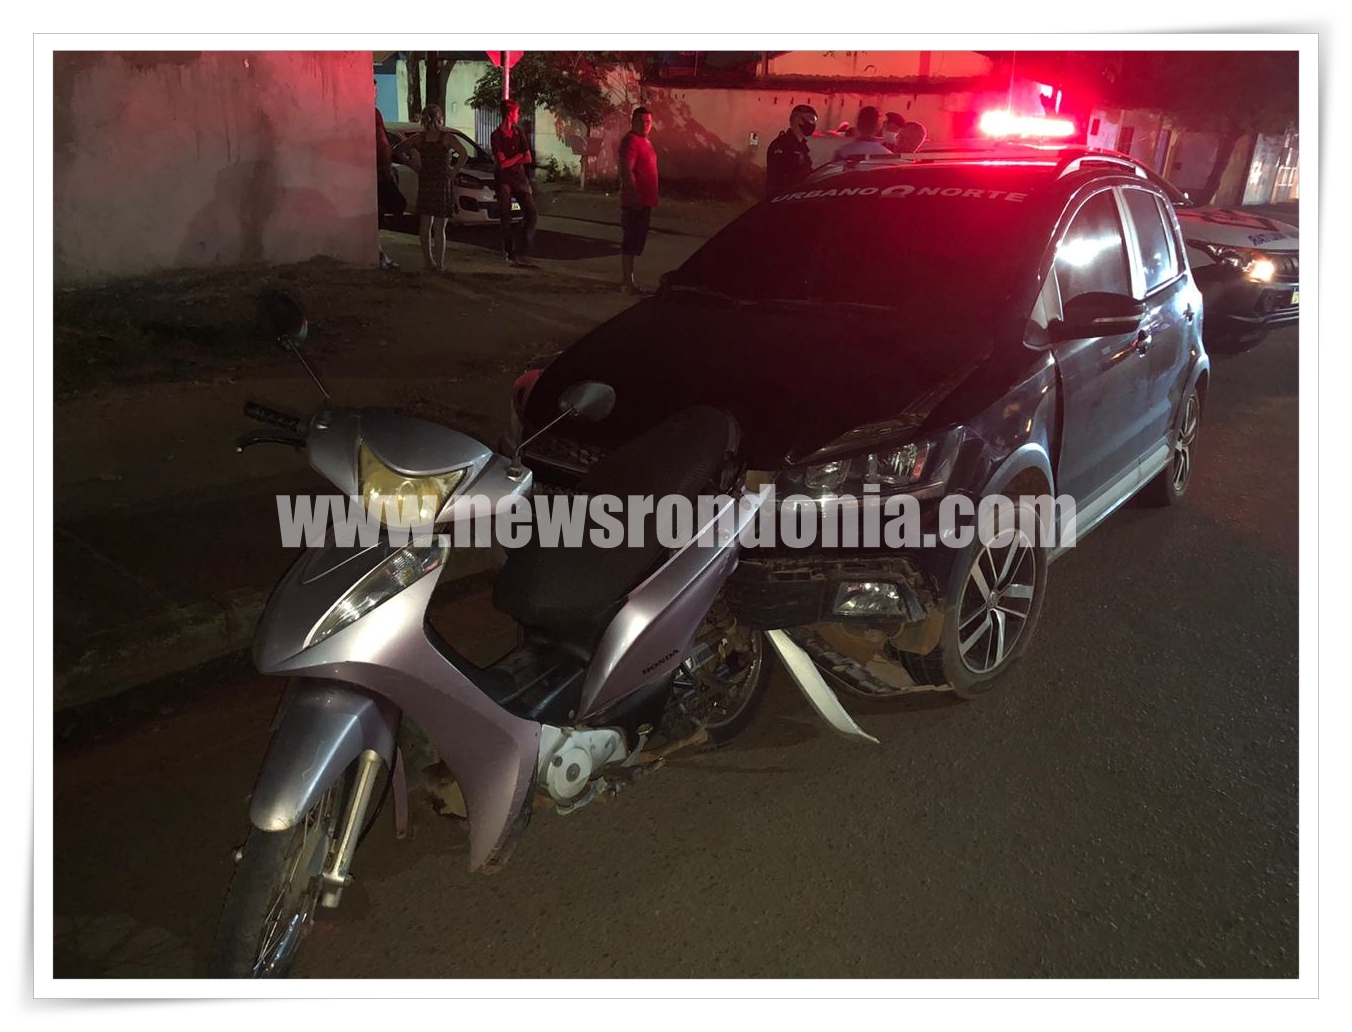 URGENTE: Motorista de aplicativo atropela dupla em moto após ser roubado - News Rondônia